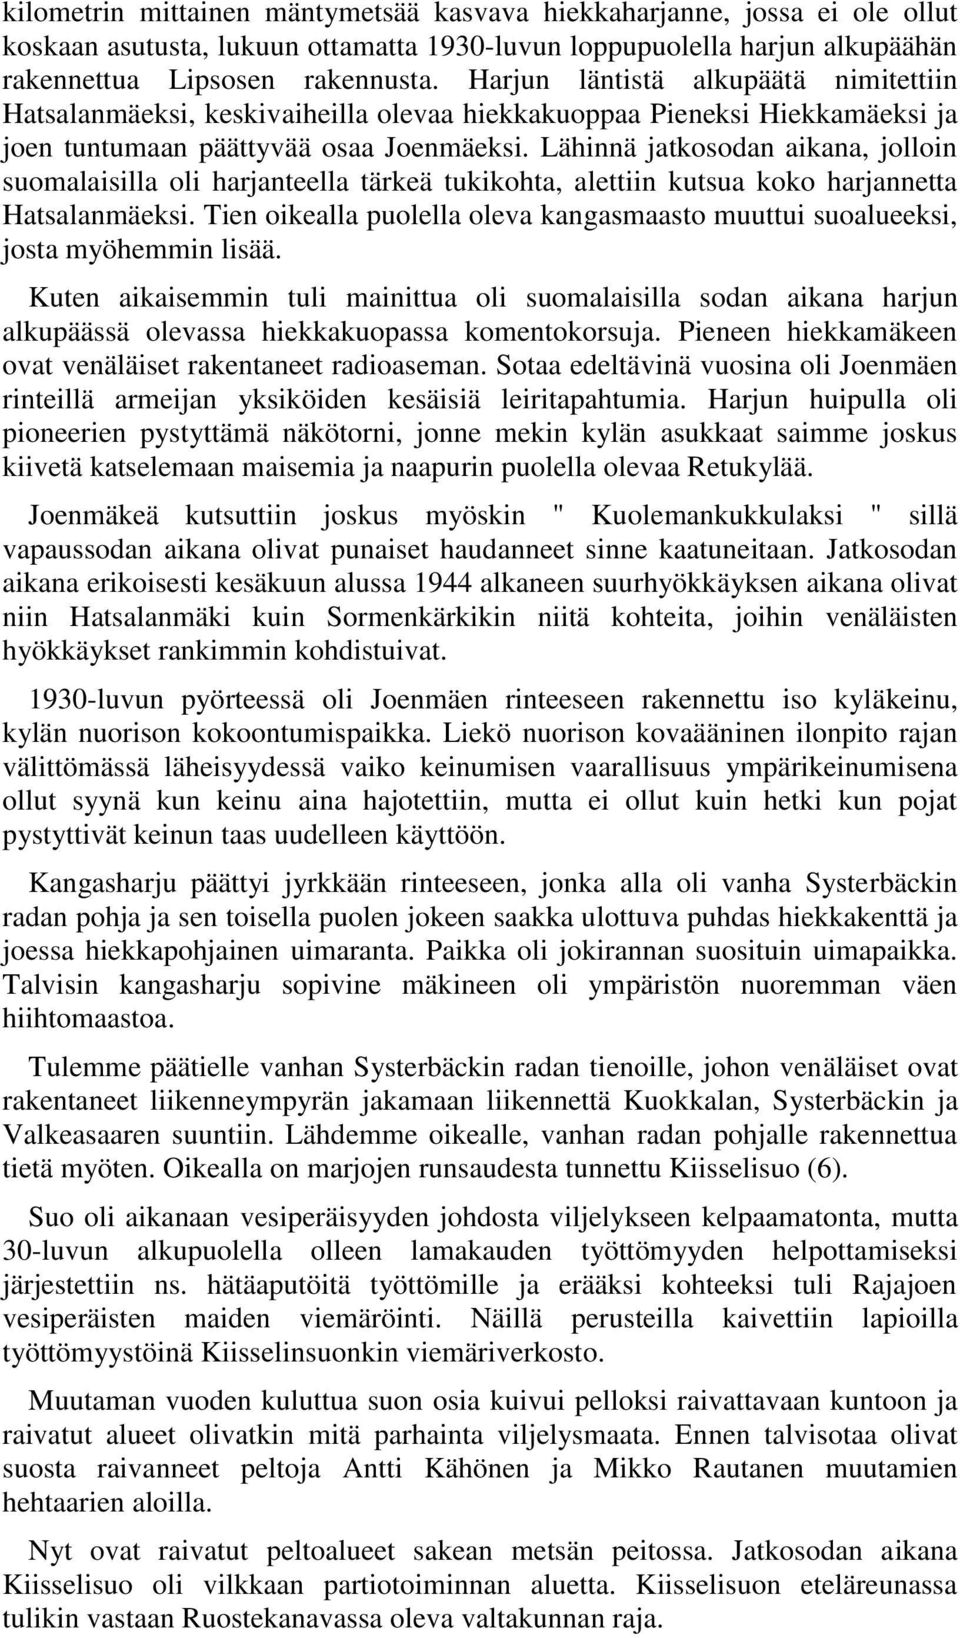 Lähinnä jatkosodan aikana, jolloin suomalaisilla oli harjanteella tärkeä tukikohta, alettiin kutsua koko harjannetta Hatsalanmäeksi.